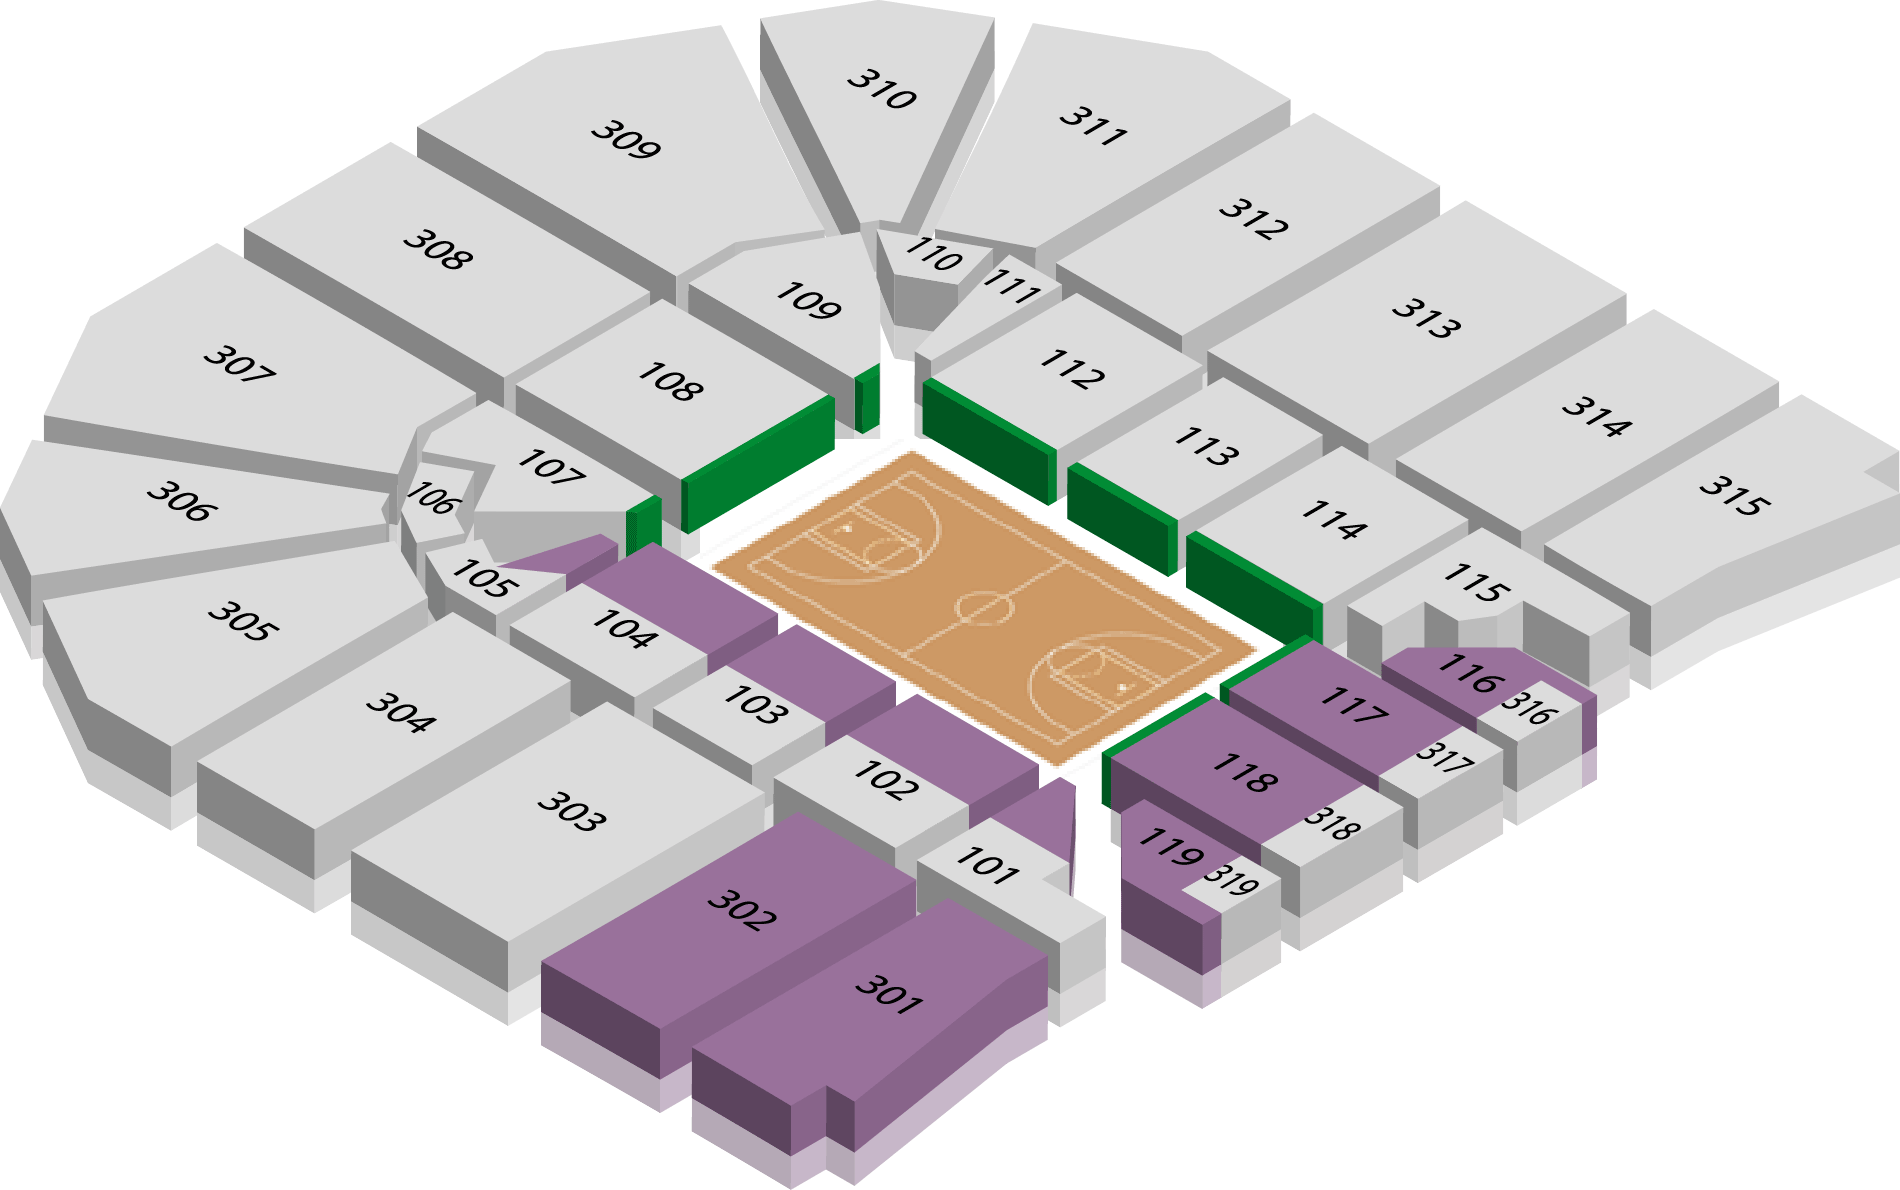 John Paul Jones Arena Seating Chart Virtual